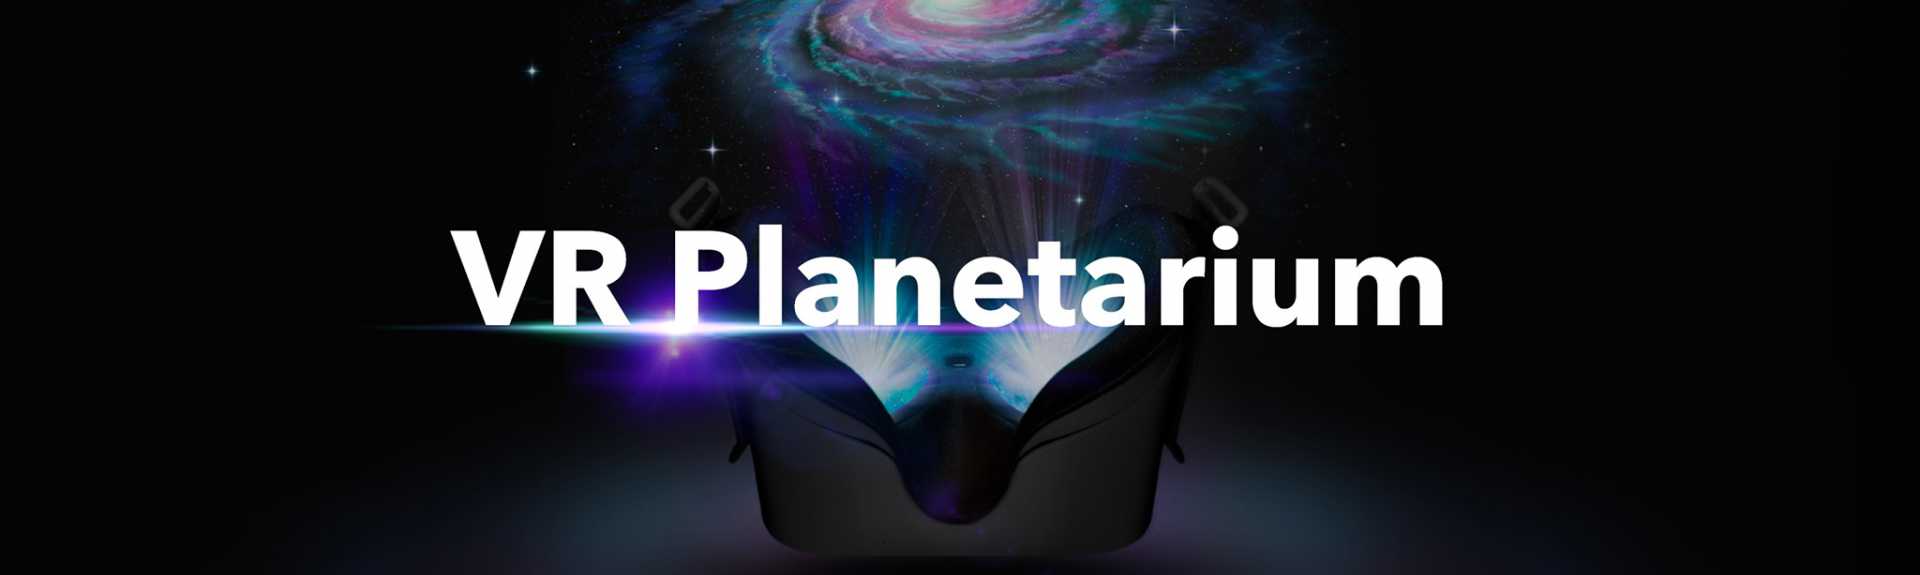 VR Planetarium For Schools